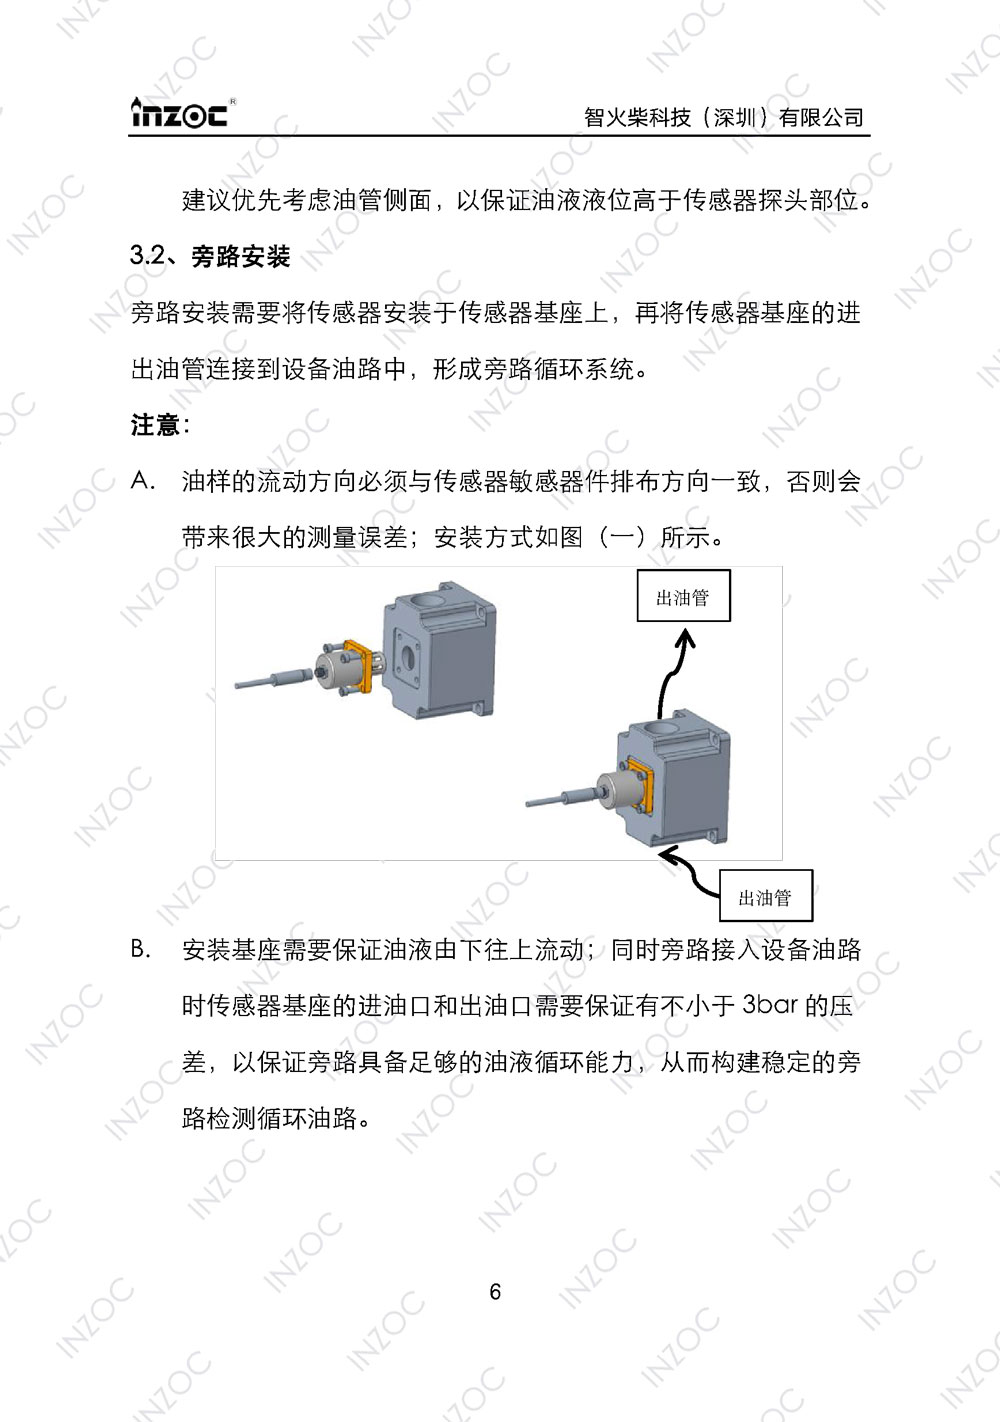 IFV-3/4/5系列粘度多参量油液传感器使用说明书